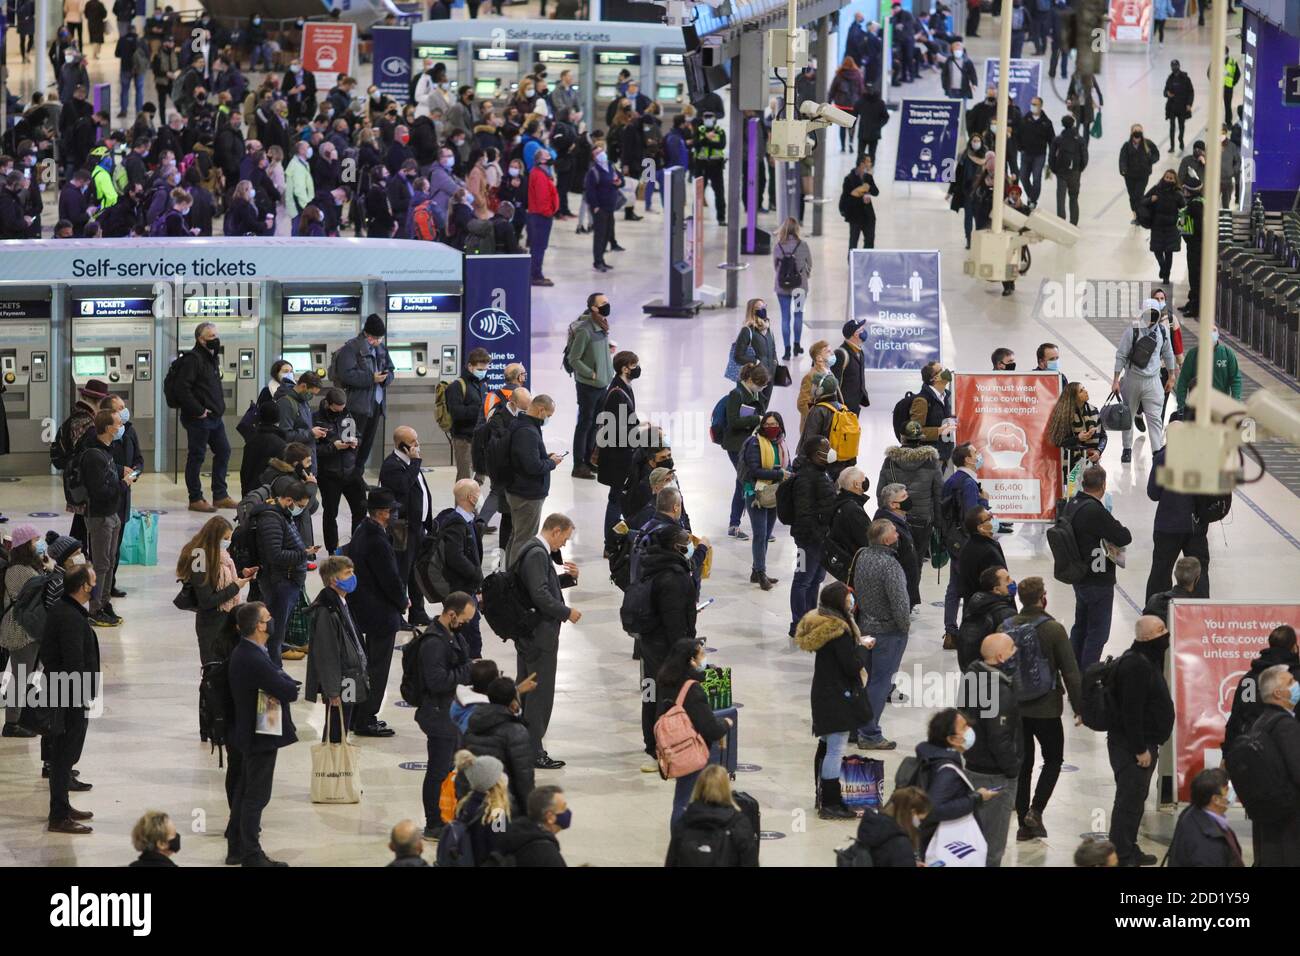 London, Großbritannien. November 2020. Am 23. November 2020 warten die Leute in der abendlichen Hauptverkehrszeit in London, Großbritannien, an der Waterloo Station. Weitere 15,450 Menschen in Großbritannien haben COVID-19 positiv getestet, was die Gesamtzahl der Coronavirus-Fälle im Land auf 1,527,495 bringt, laut offiziellen Zahlen, die am Montag veröffentlicht wurden. Der britische Premierminister Boris Johnson kündigte am Montag ein "härteres" abgestuftes System von Coronavirus-Beschränkungen an, um Englands gegenwärtige Sperre zu ersetzen, wenn sie am 2. Dezember endet. Quelle: Tim Ireland/Xinhua/Alamy Live News Stockfoto